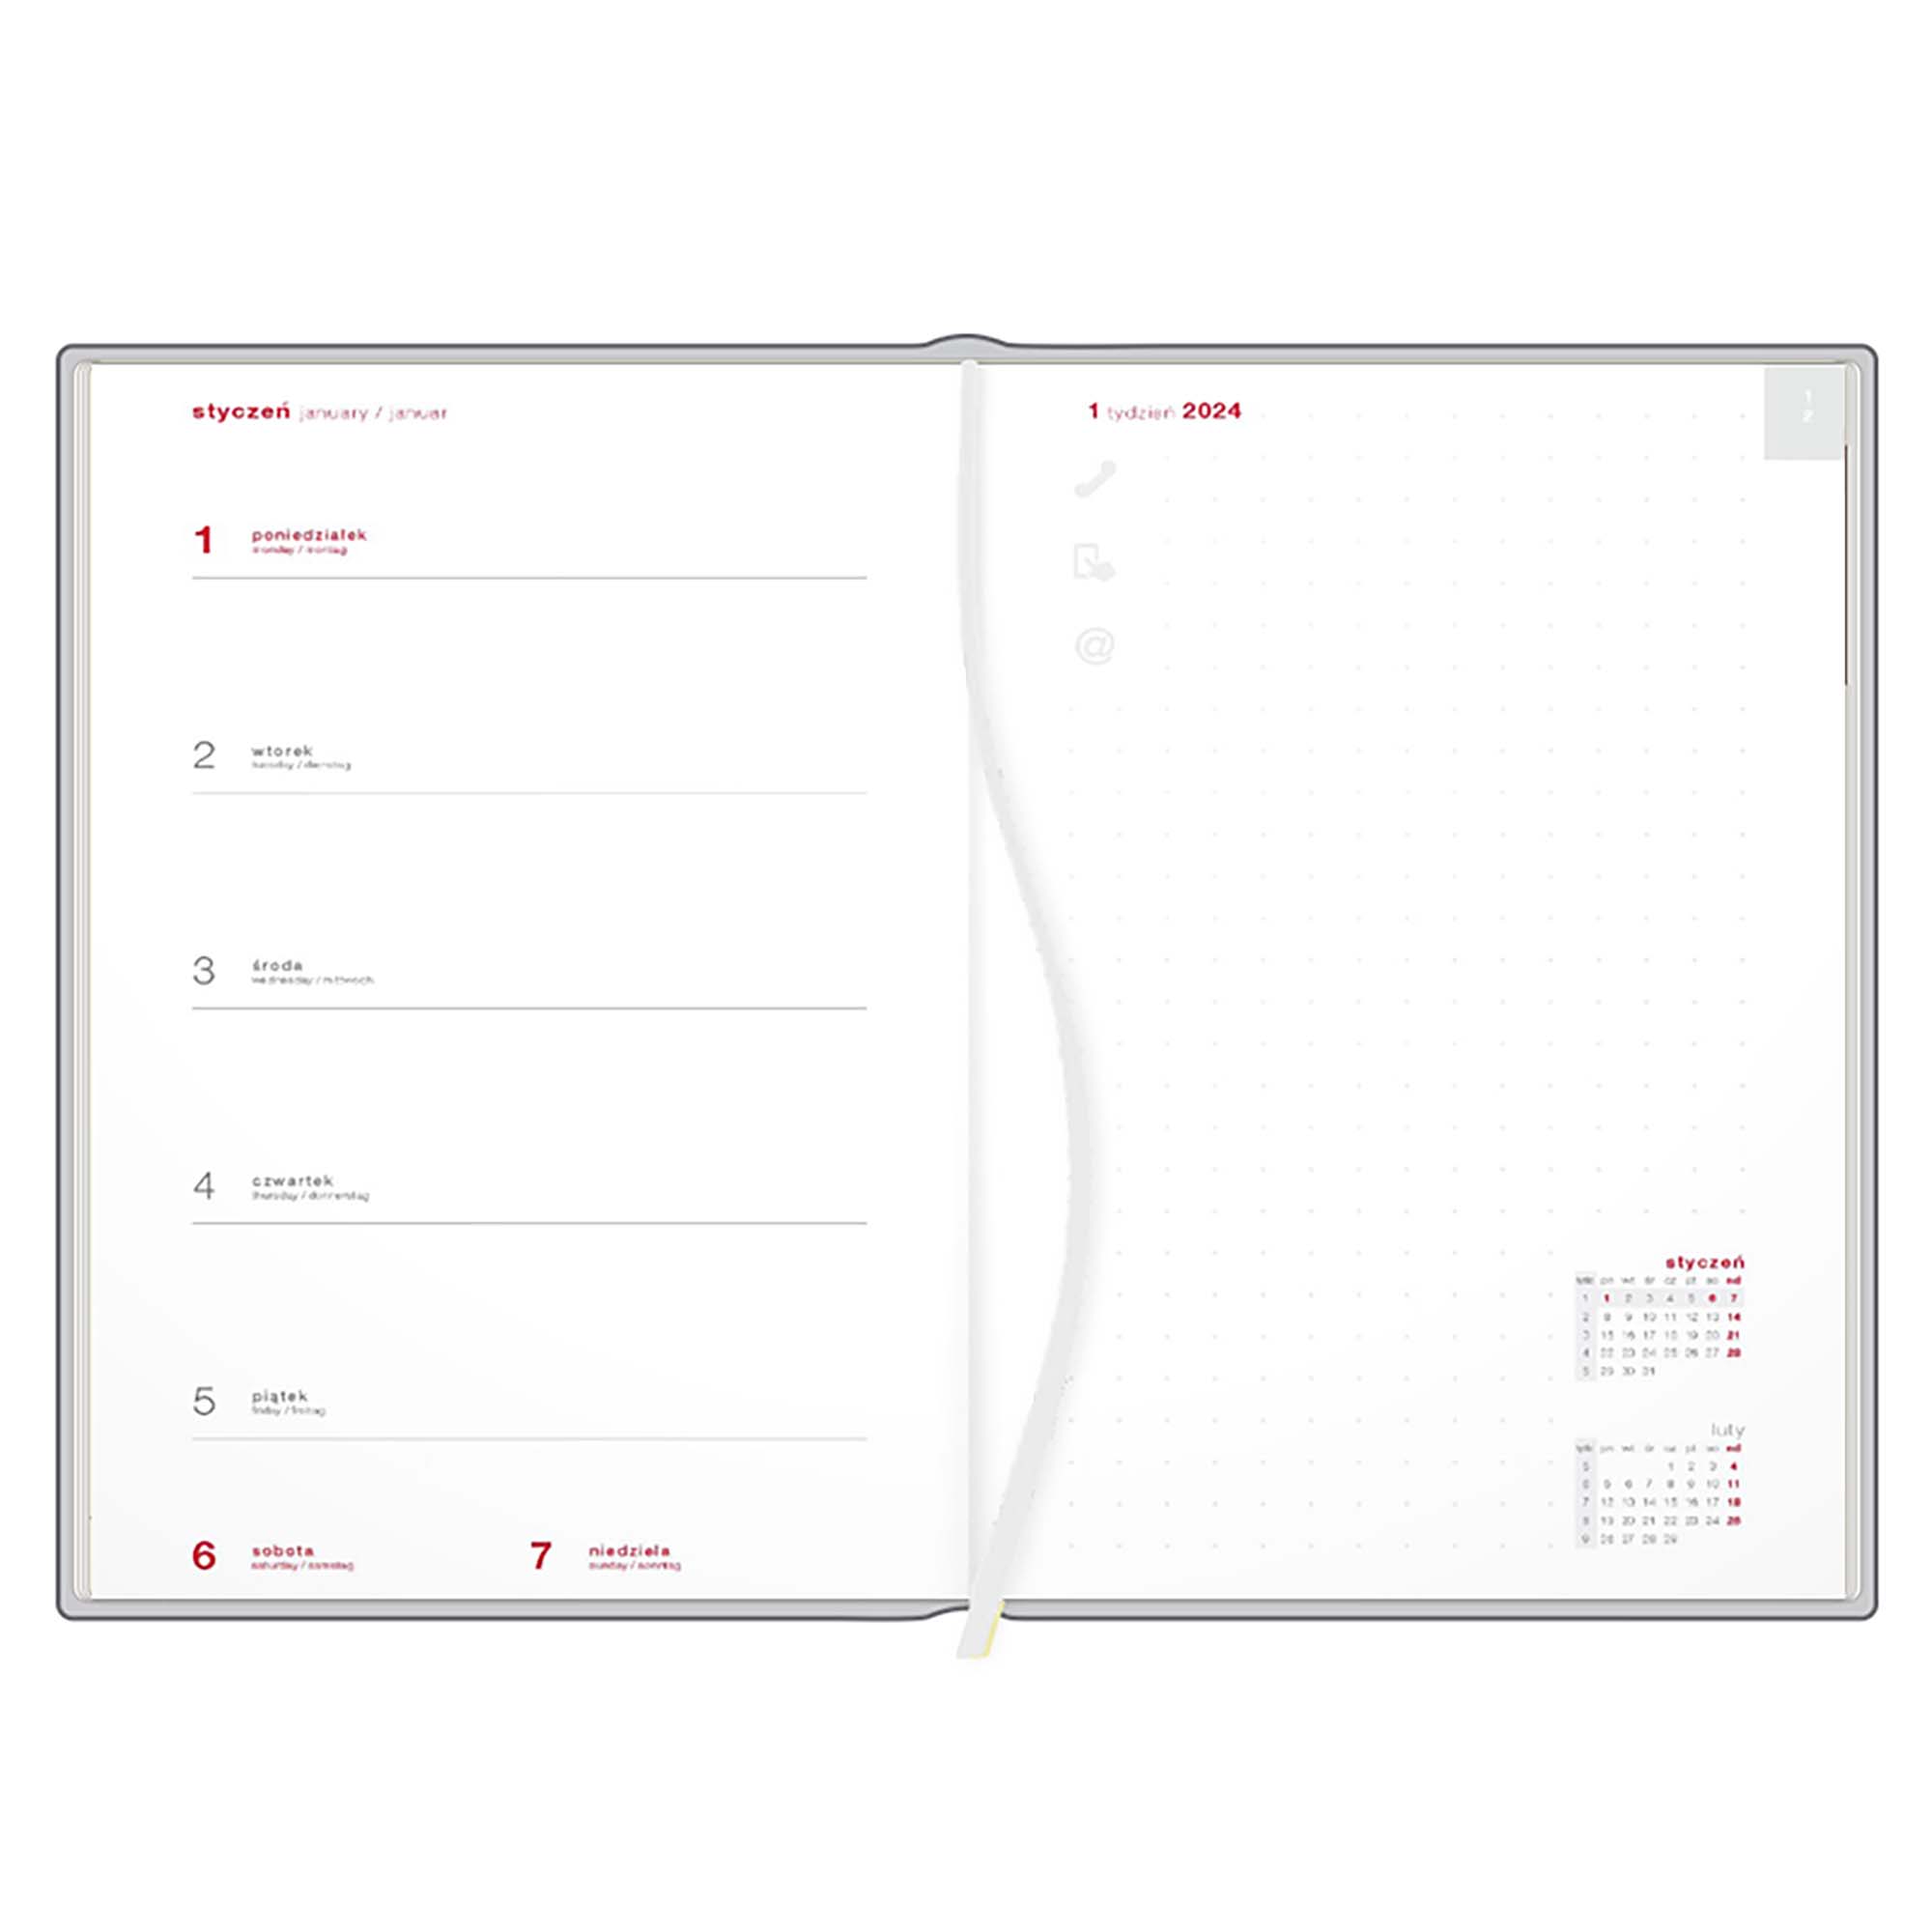 Kalendarz książkowy A4 tygodniowy z notesem, Londyn, niebiesko-czerwony